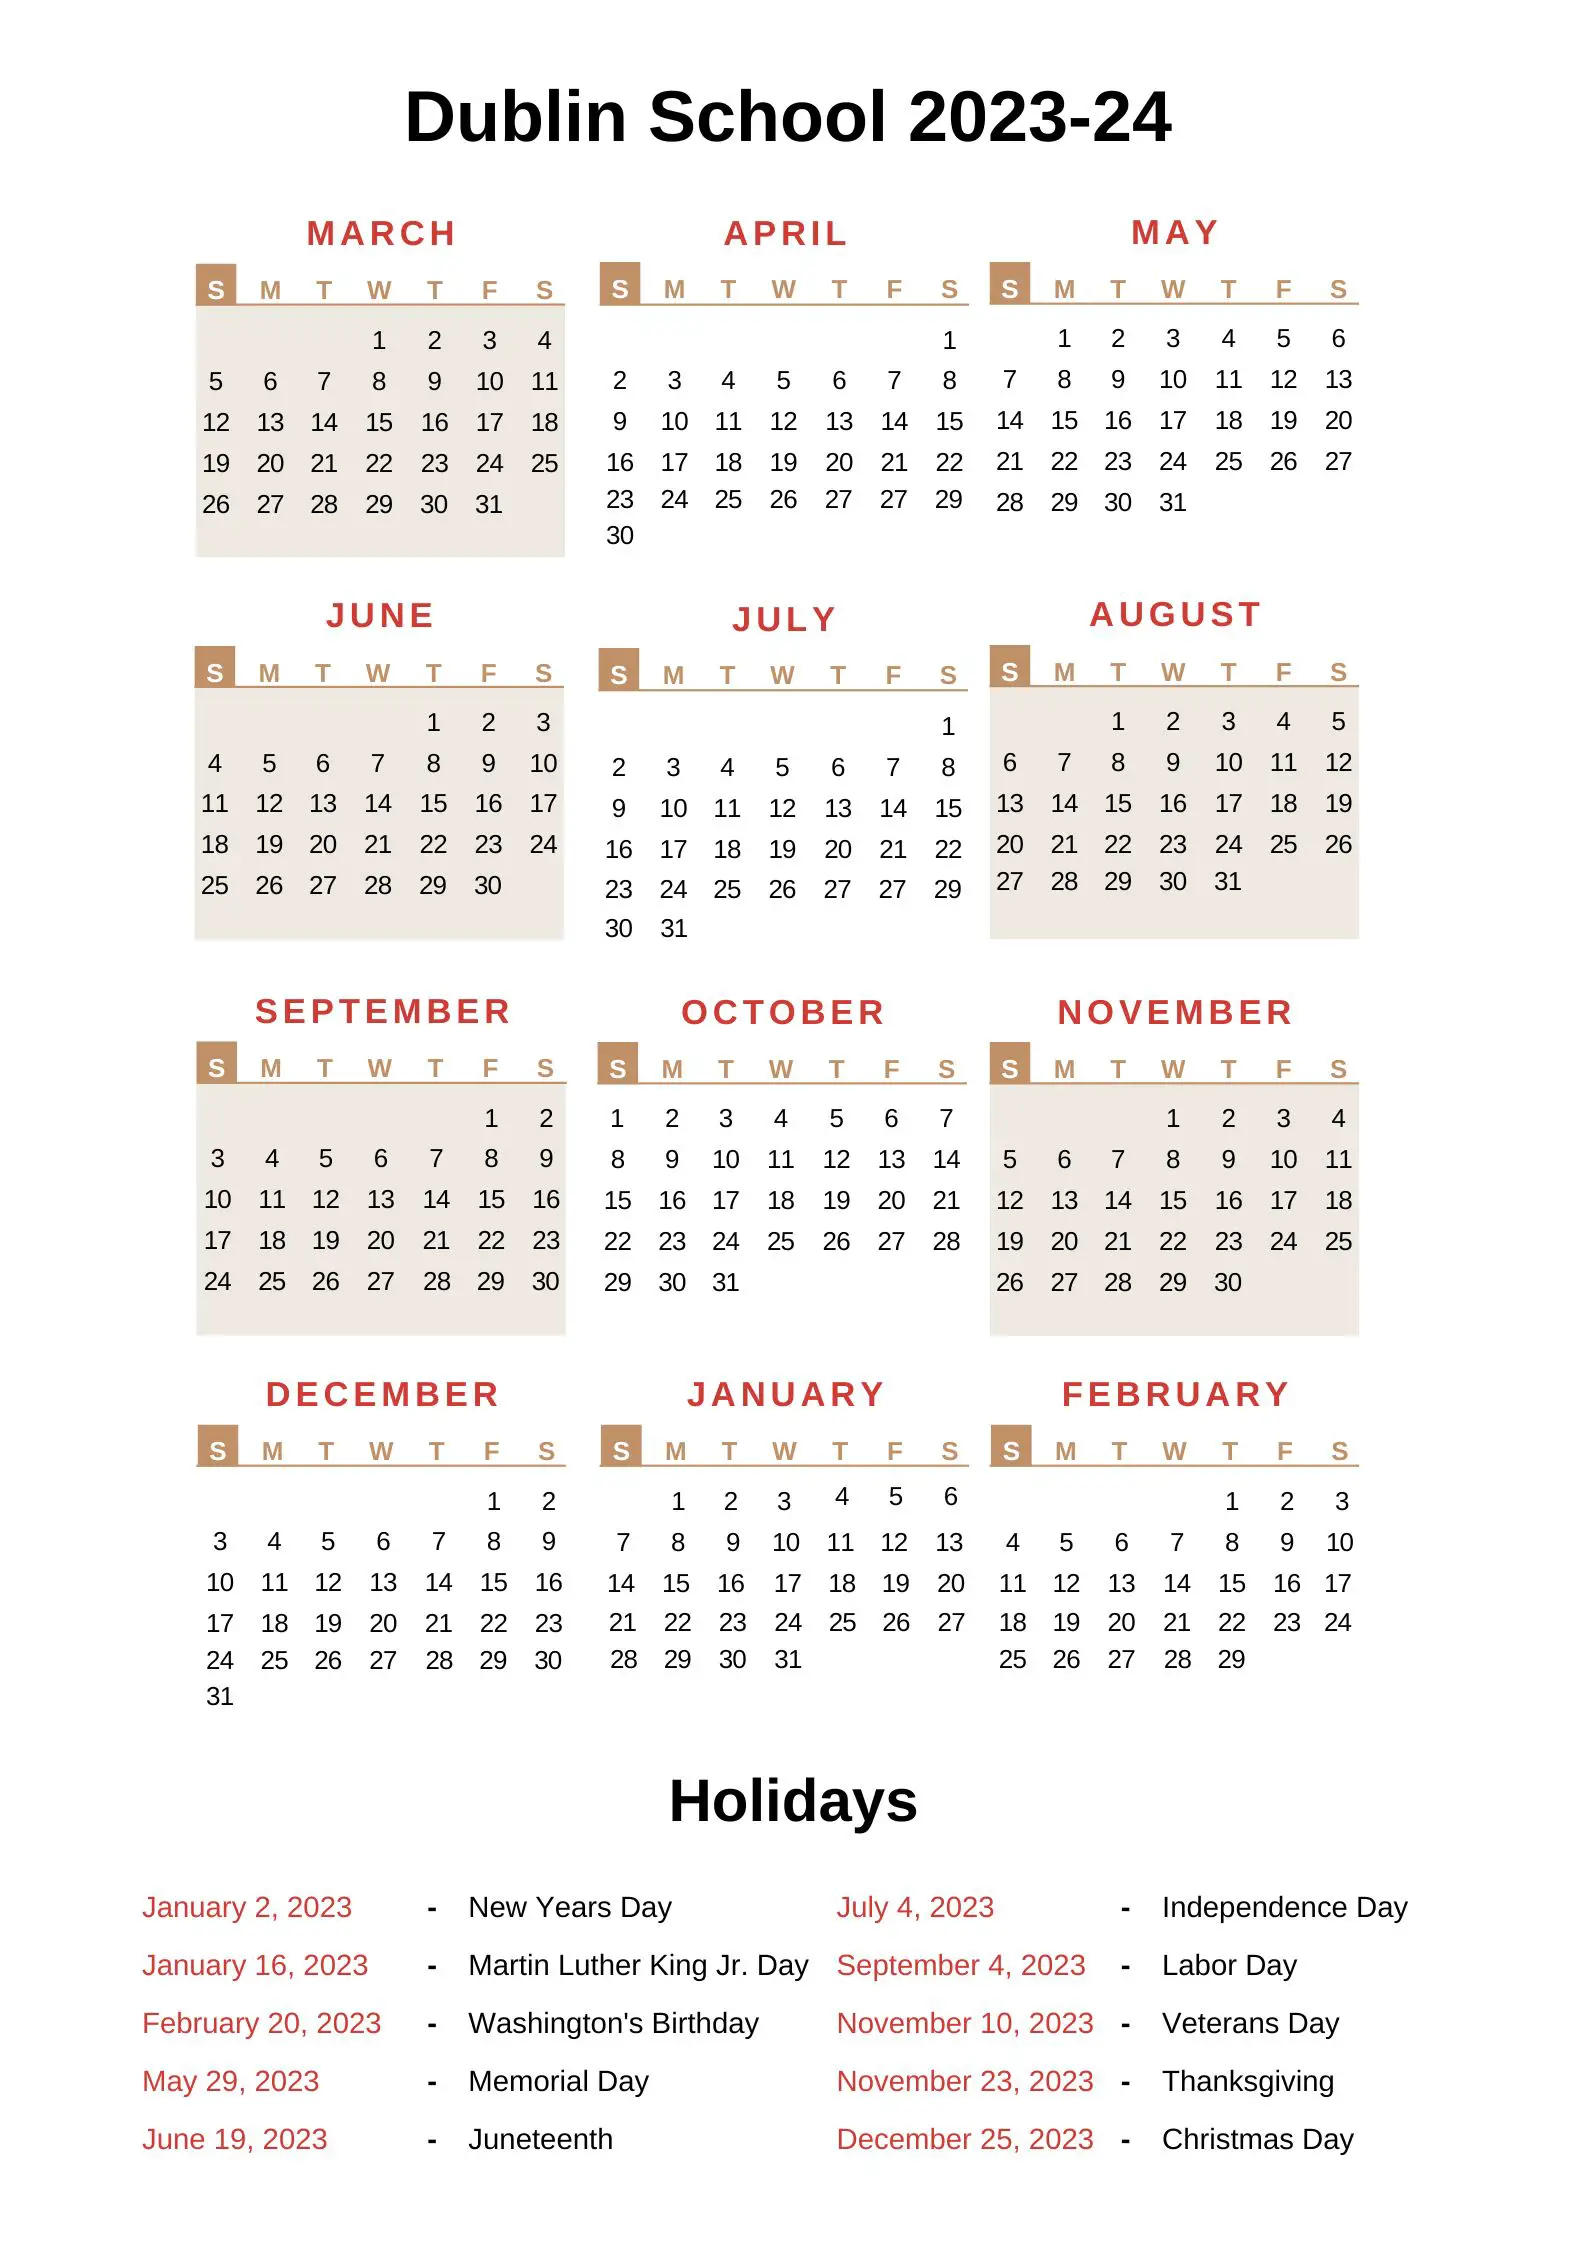 Dublin City Schools Calendar 202324 With Holidays